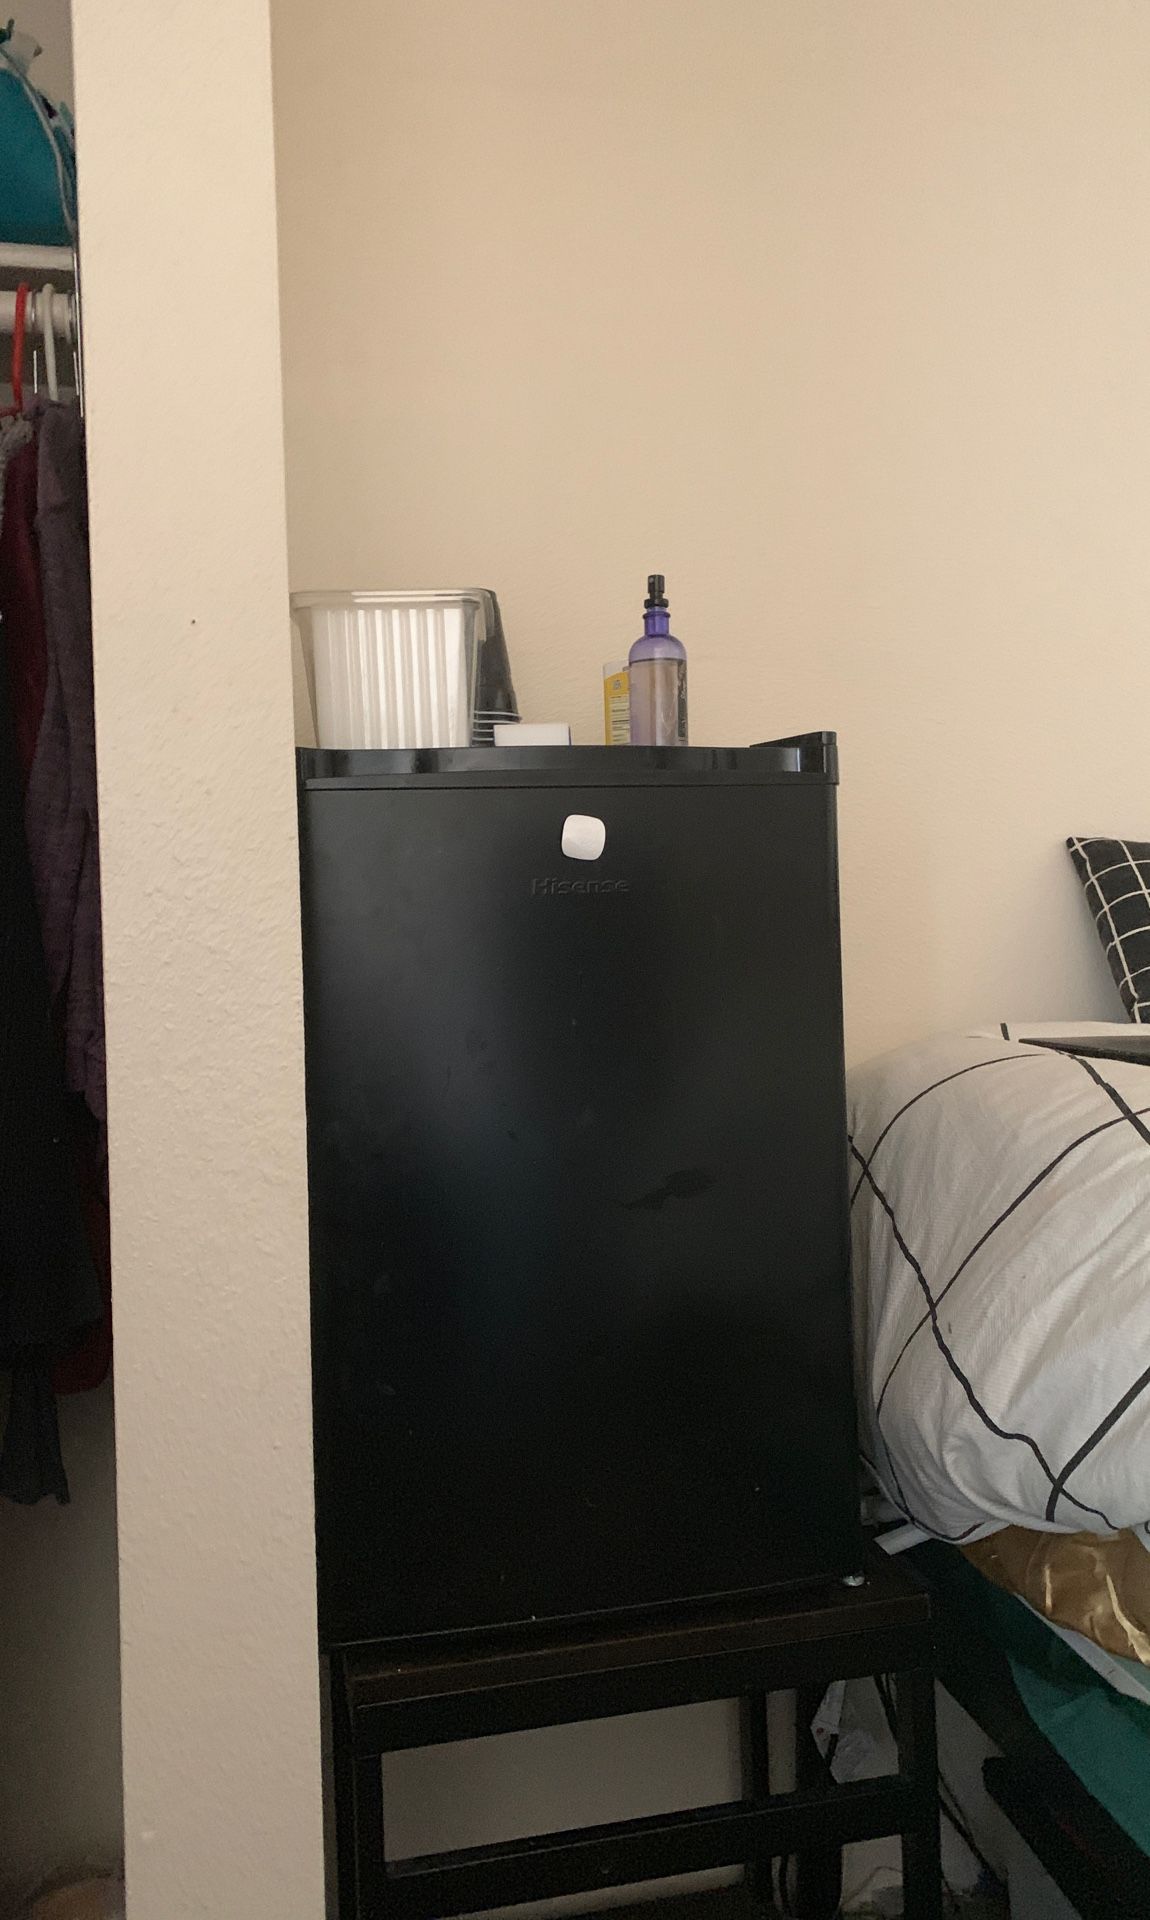 hissense mini fridge